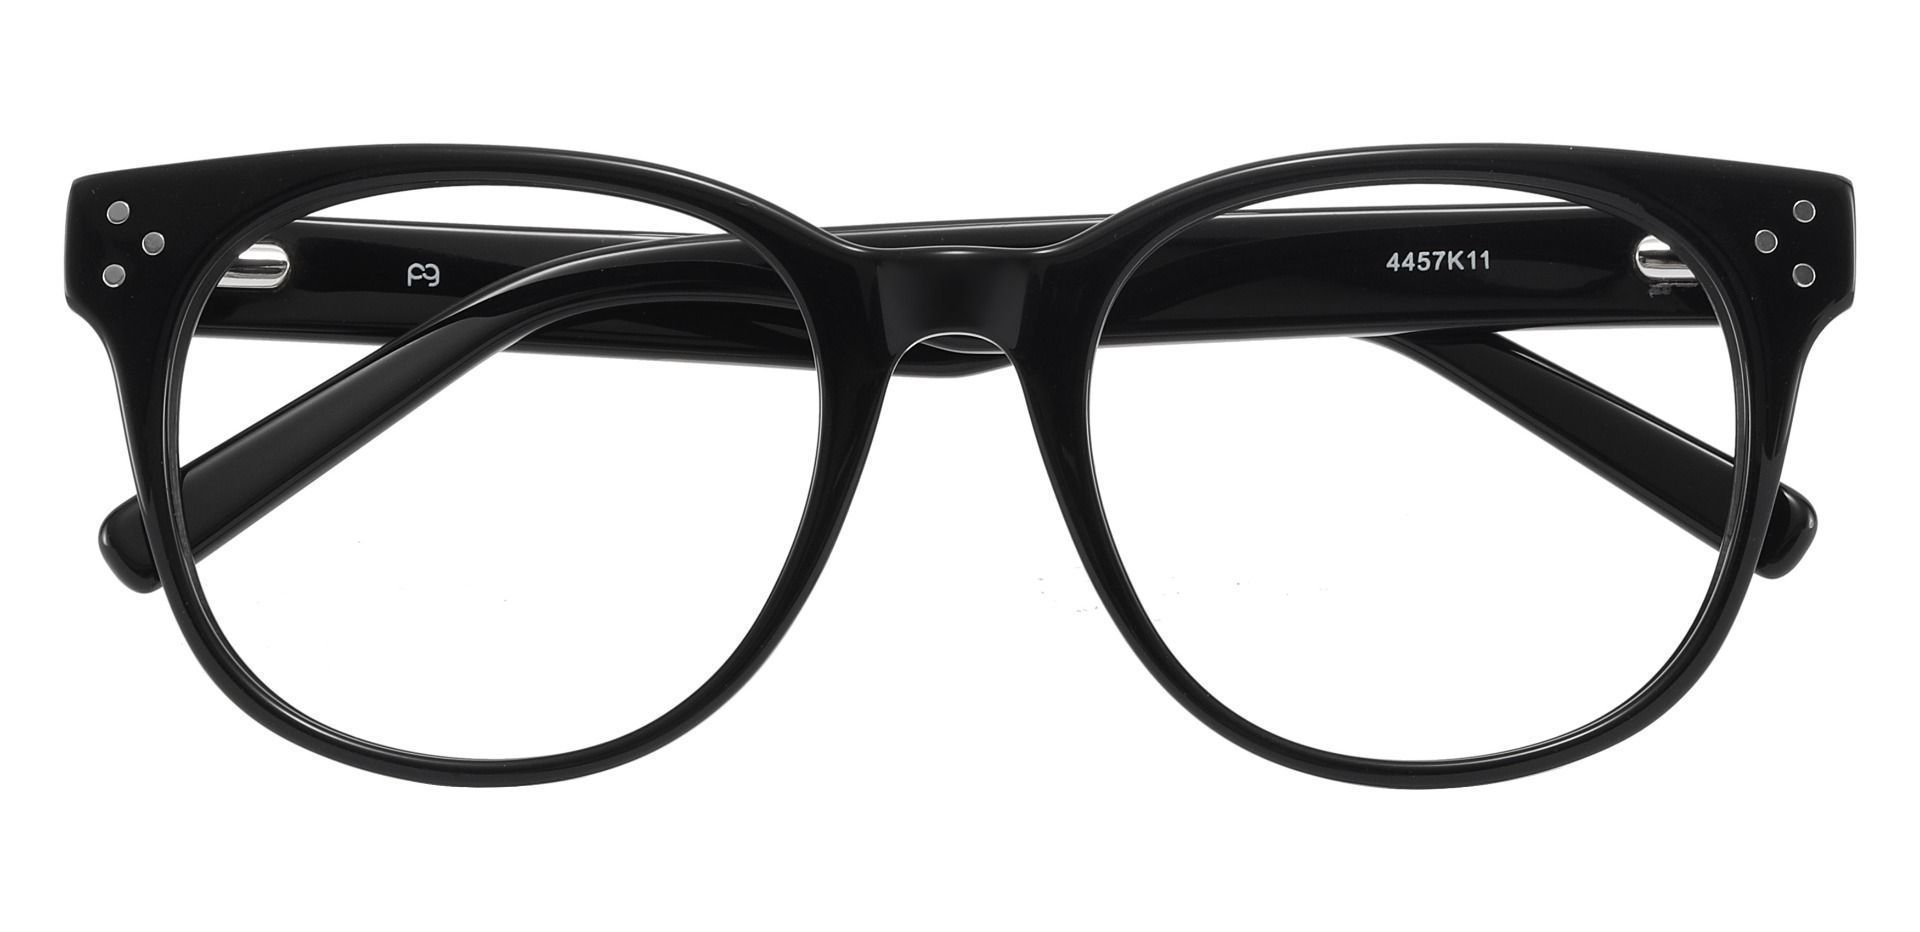 Orwell Oval Prescription Glasses - Black